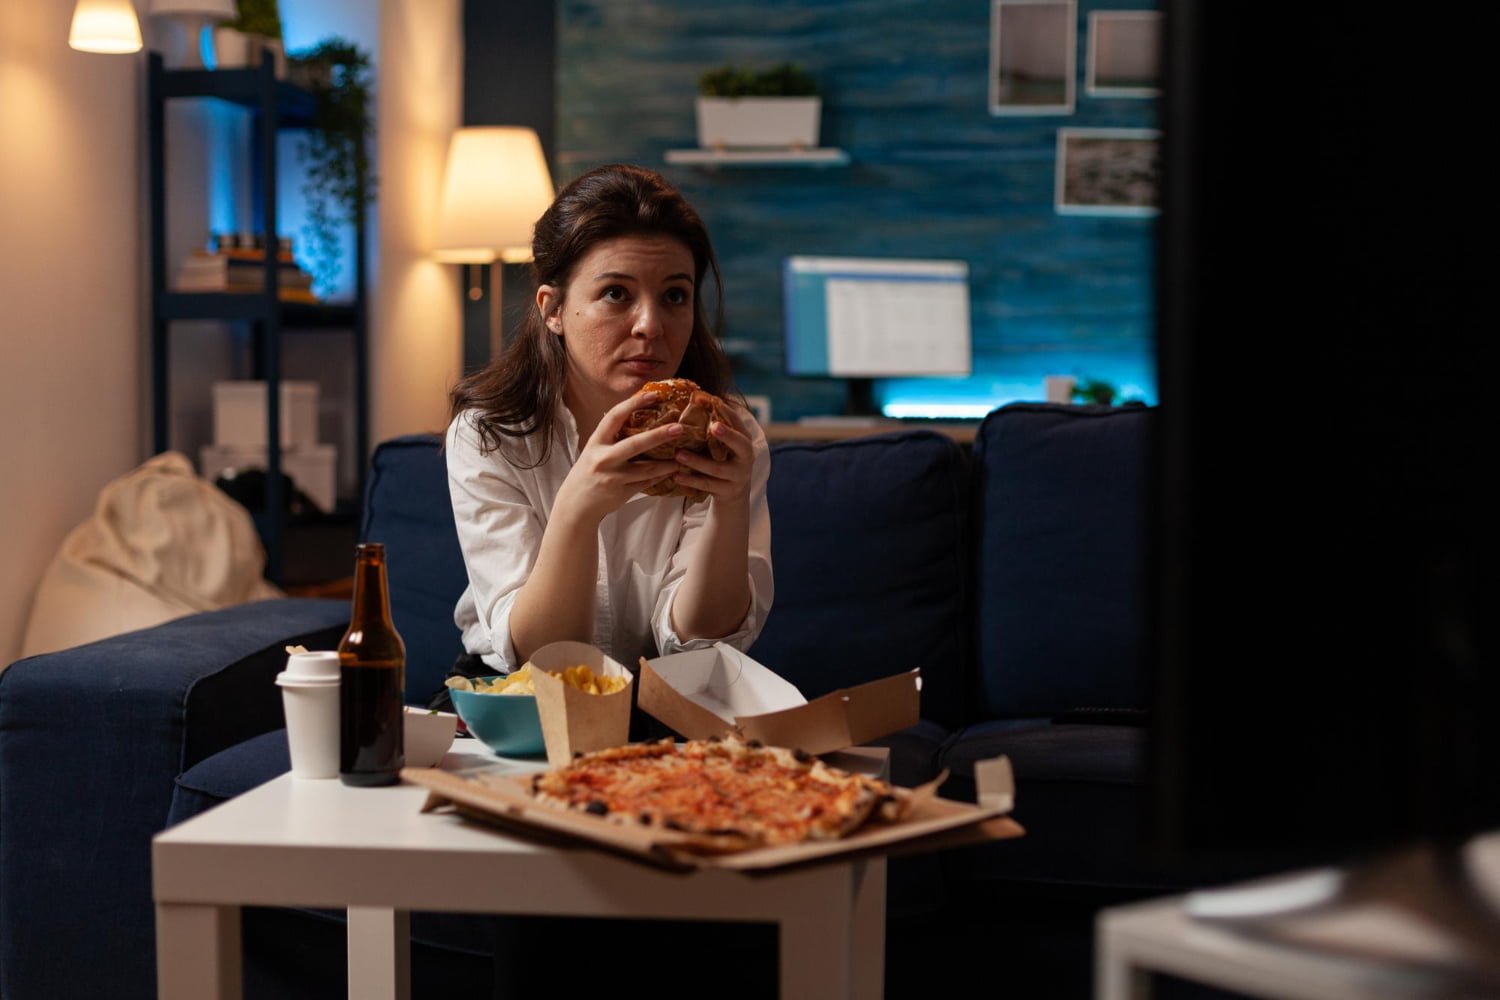 Mujer que acostumbra a Ver televisión mientras come / pizza / alimentos / canas